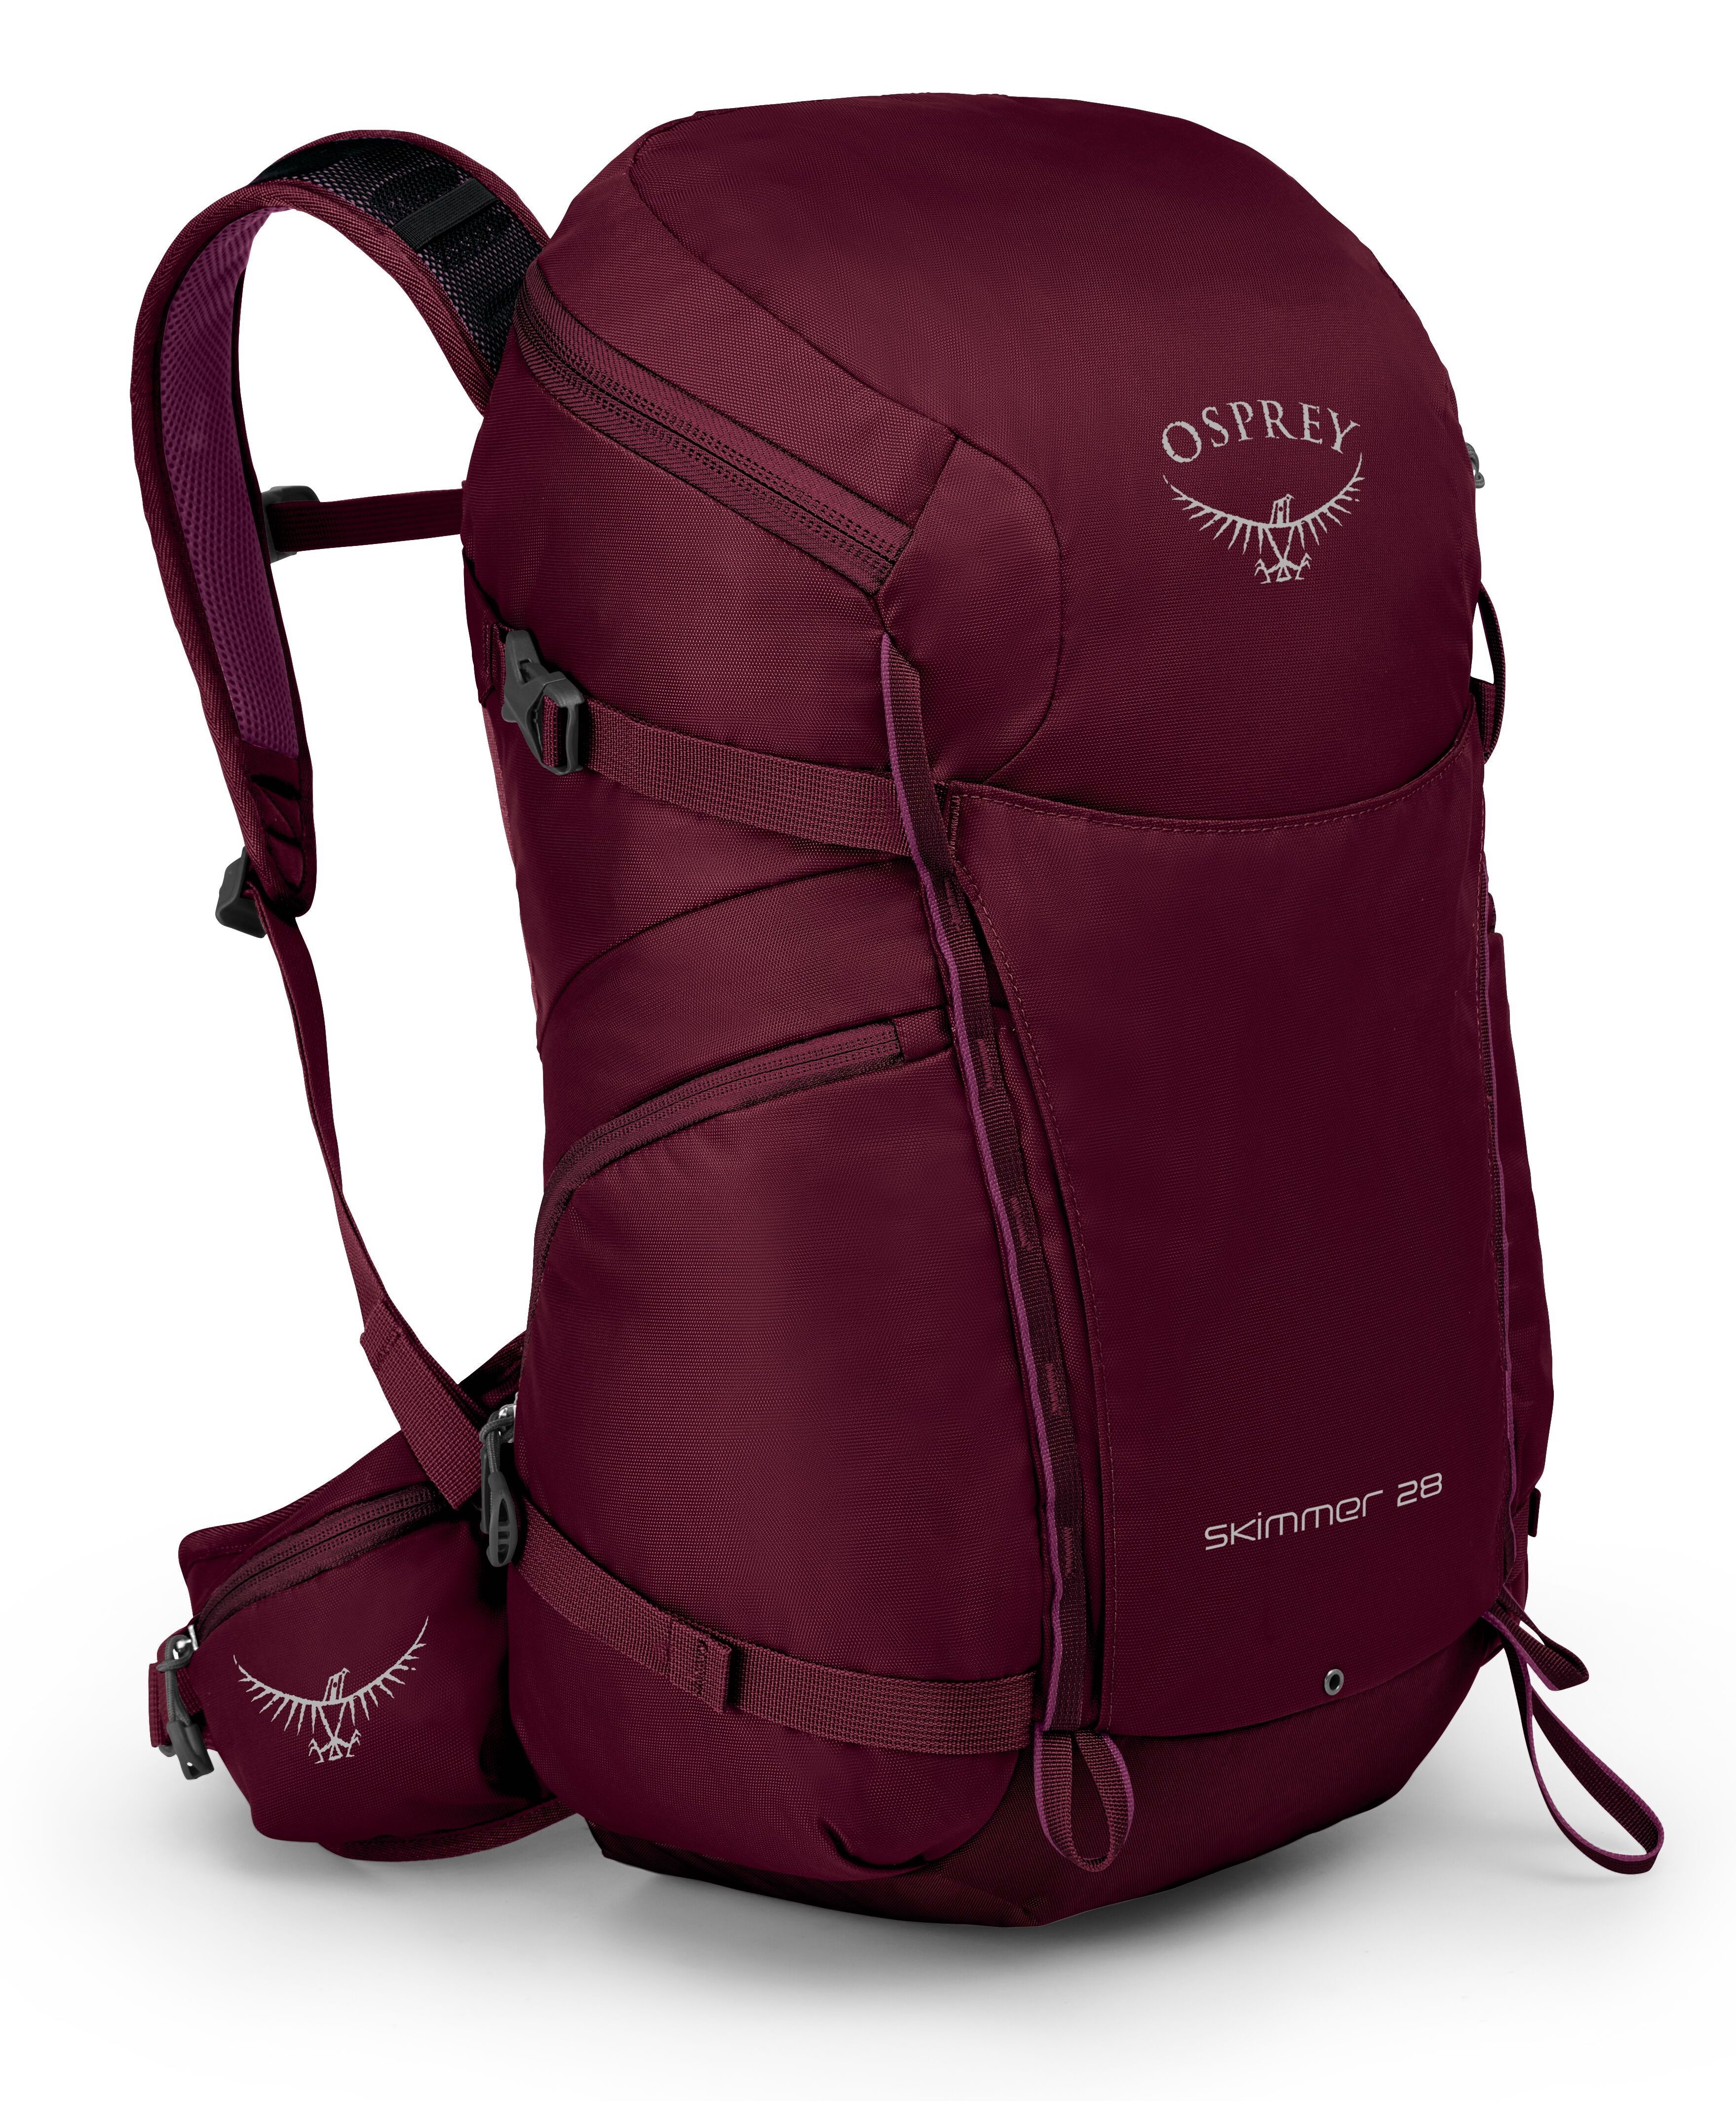 Osprey Skimmer 28 - Hiking backpack - Women's